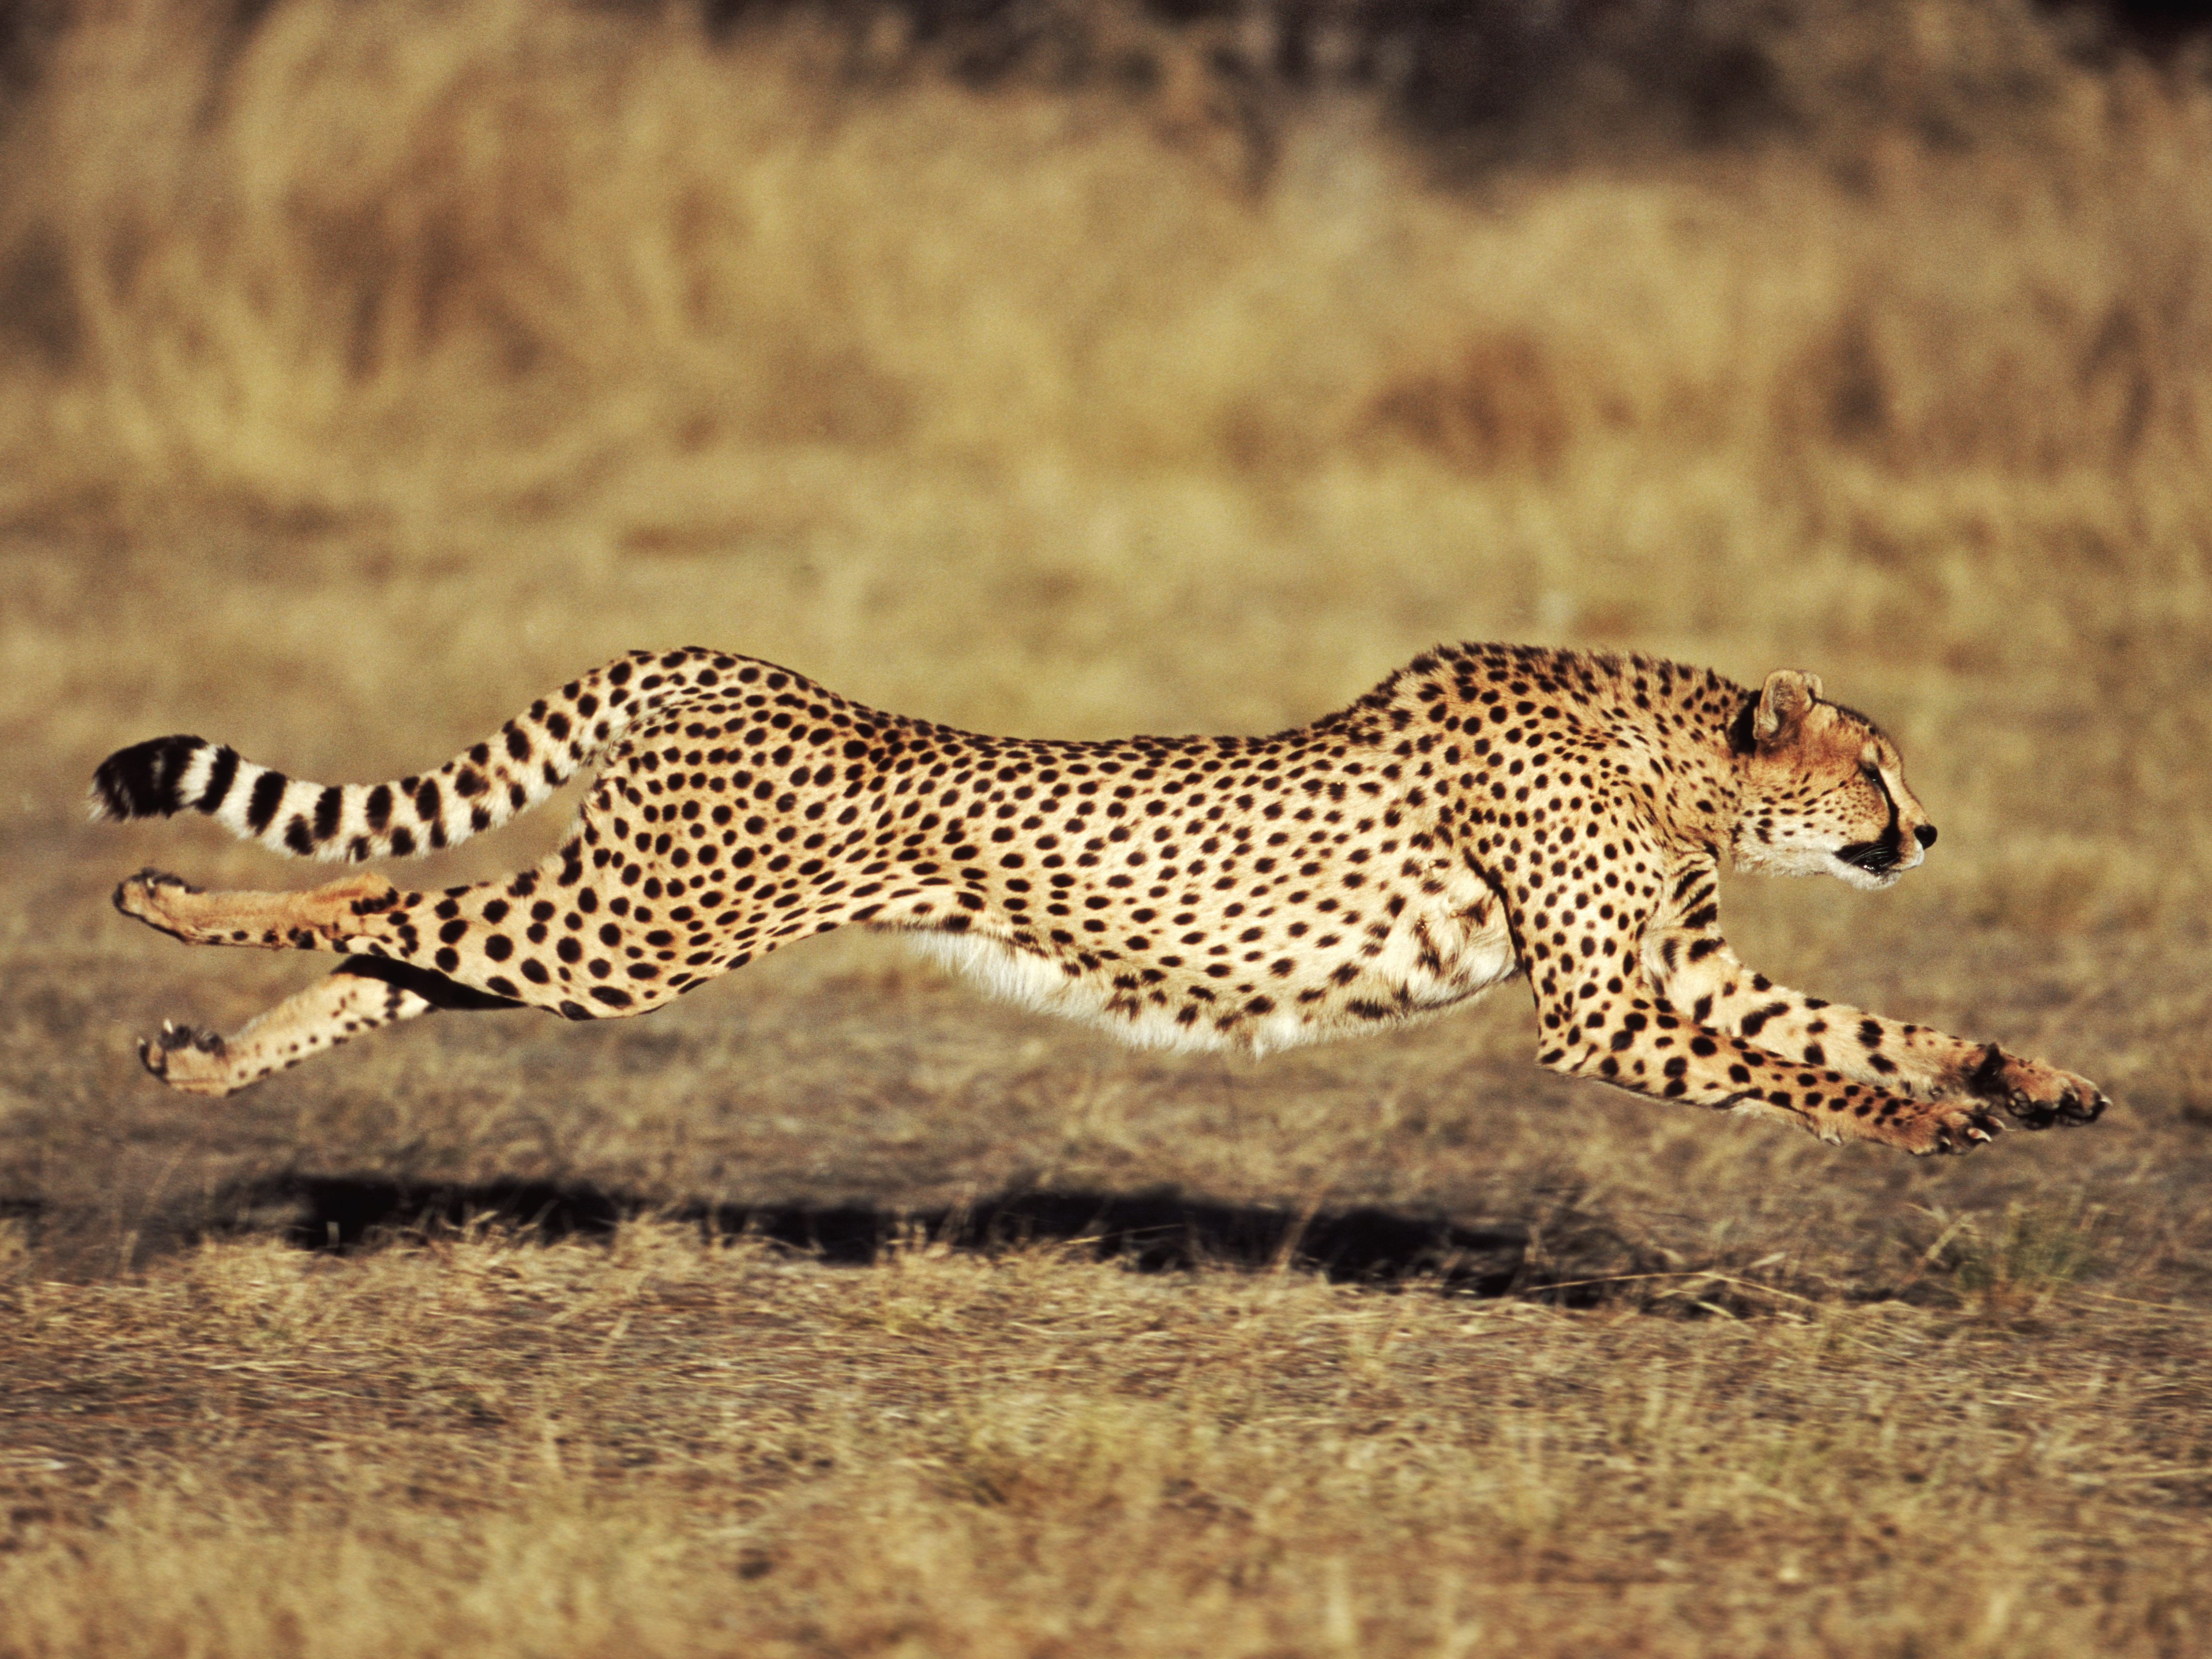 What is the fastest a cheetah can run?